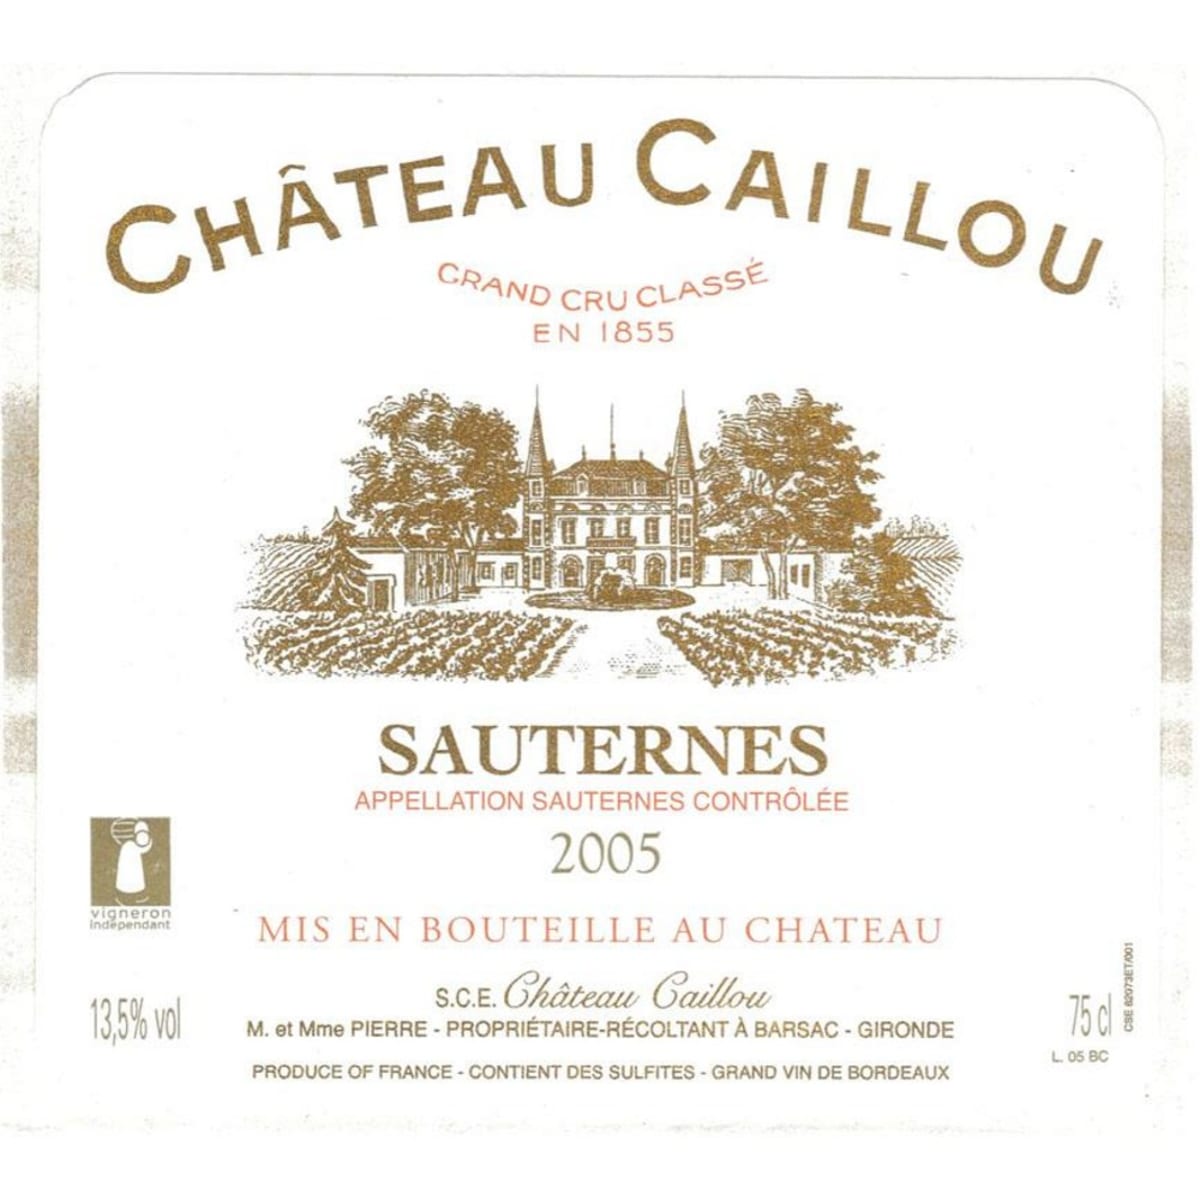 Chateau Caillou Sauternes 2005 Front Label